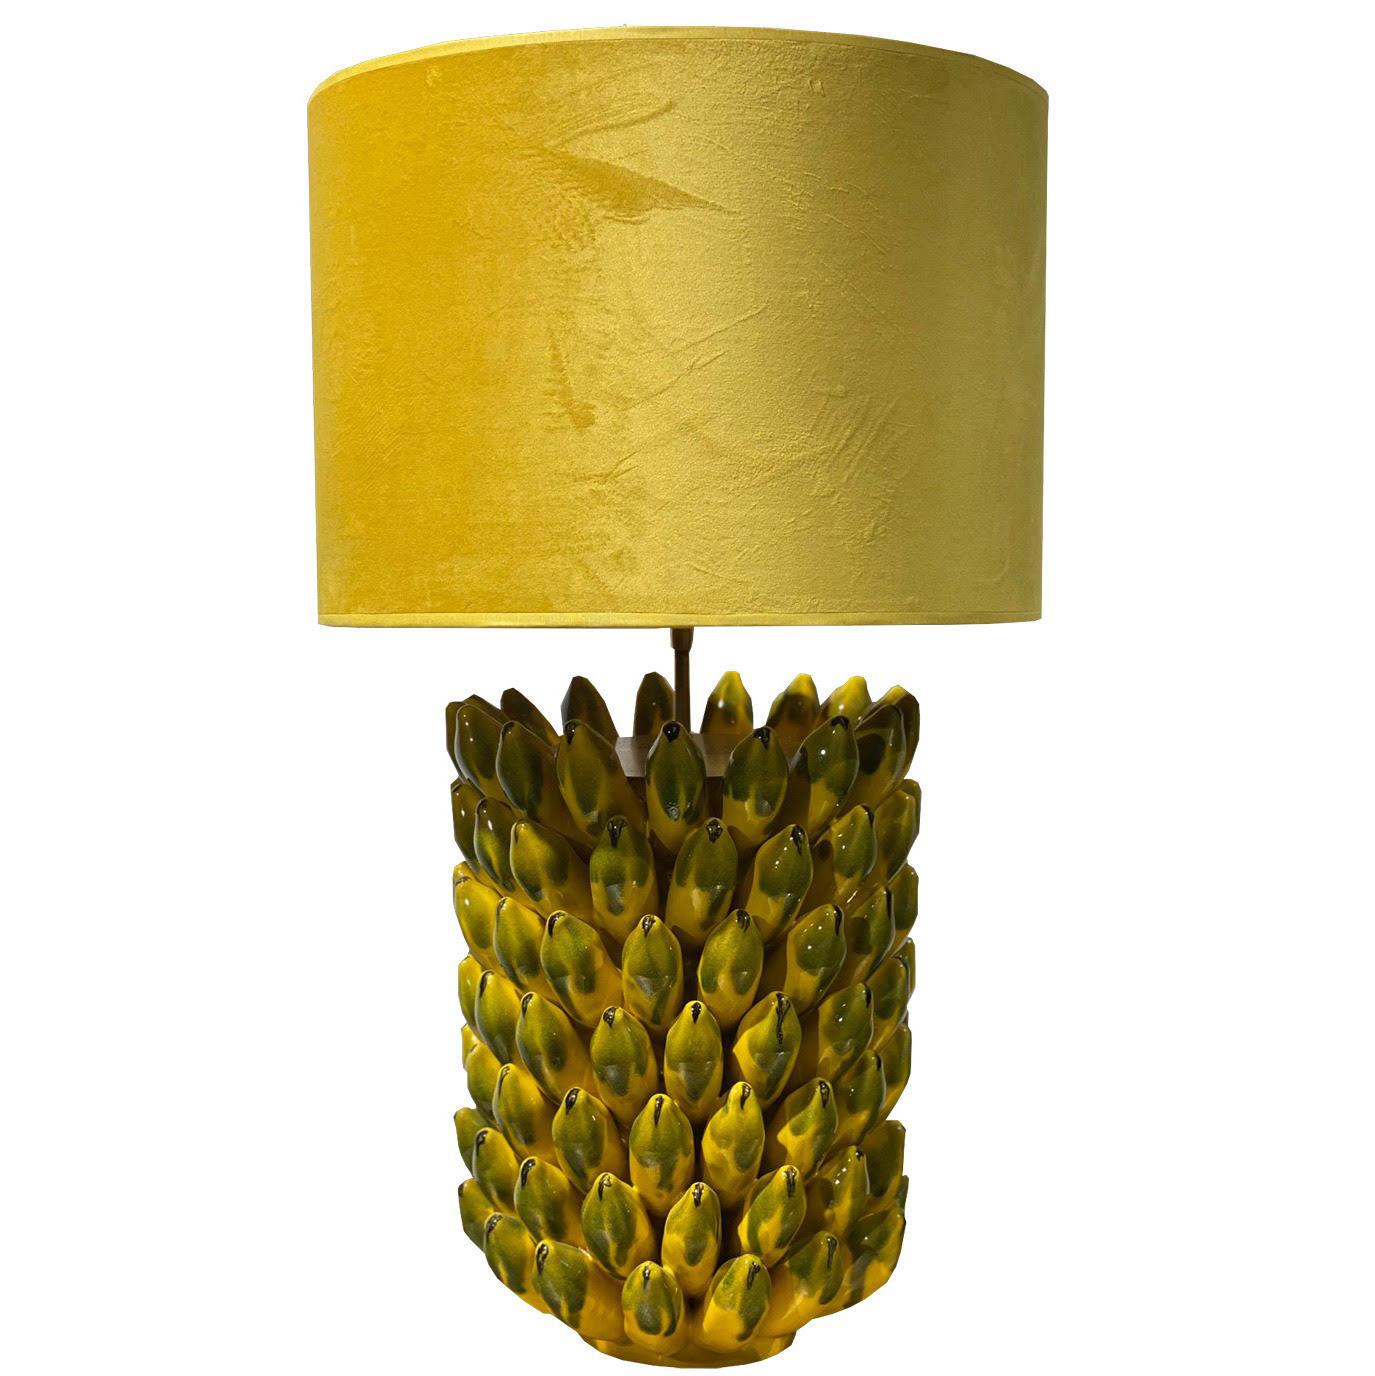 Paar „Banana“-Tischlampen aus Keramik
Originelles Paar Tischlampen aus Keramik in Form von Bananen, handgefertigt. Inklusive passendem gelben Samtschirm.
Abmessungen - H: 71 cm, T: 35 cm
Produktionszeit 1-3 Wochen